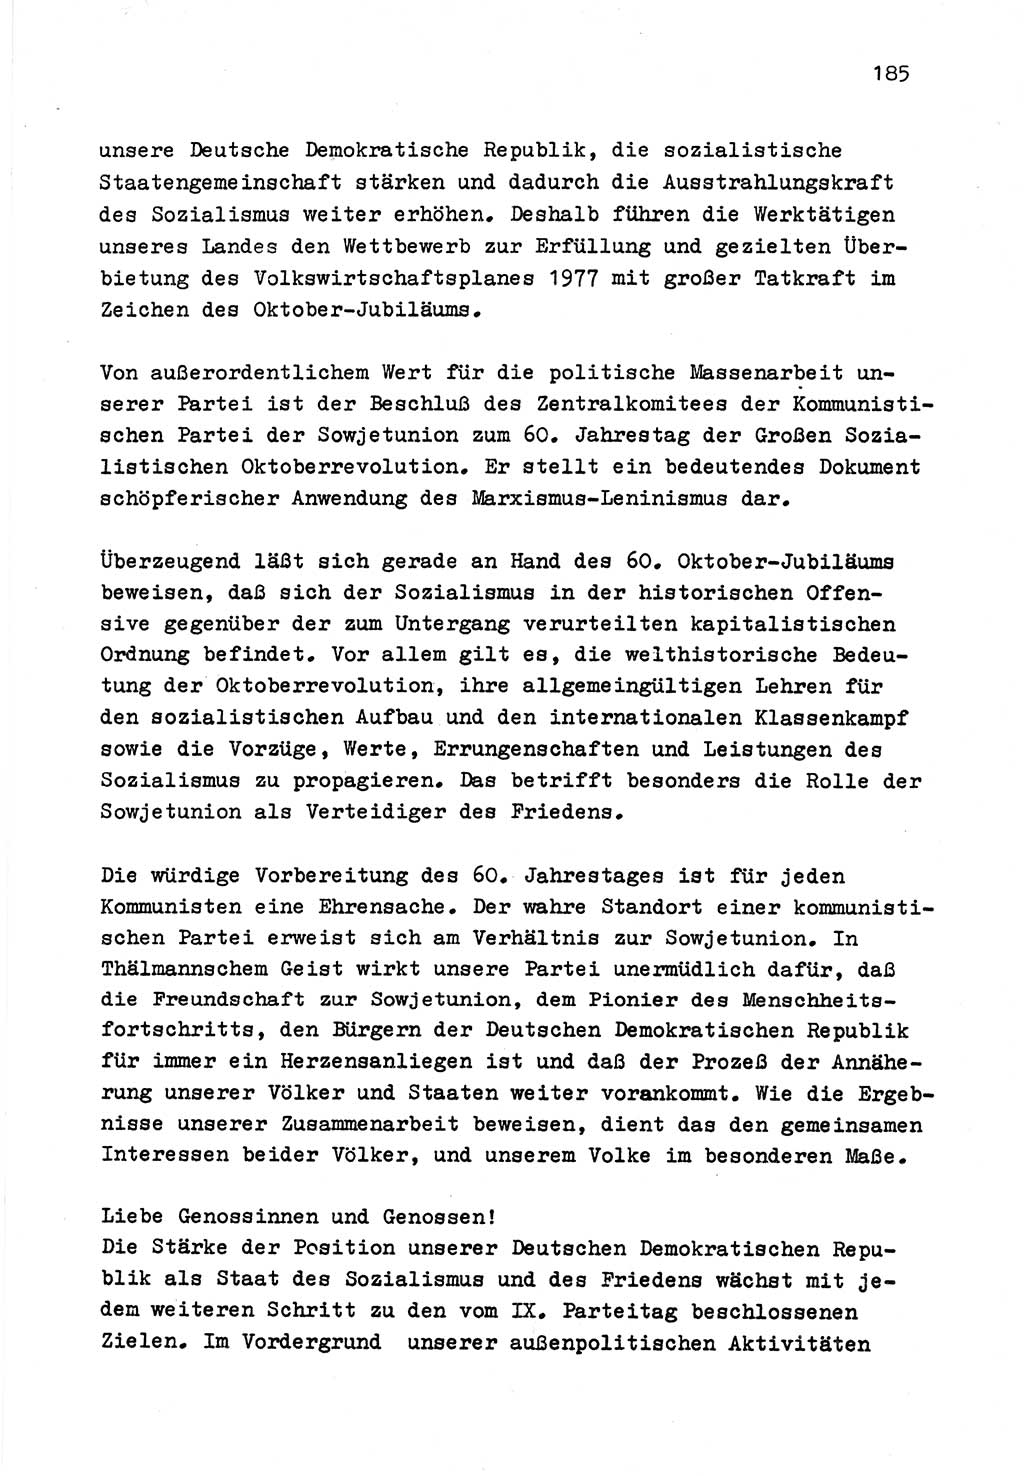 Zu Fragen der Parteiarbeit [Sozialistische Einheitspartei Deutschlands (SED) Deutsche Demokratische Republik (DDR)] 1979, Seite 185 (Fr. PA SED DDR 1979, S. 185)